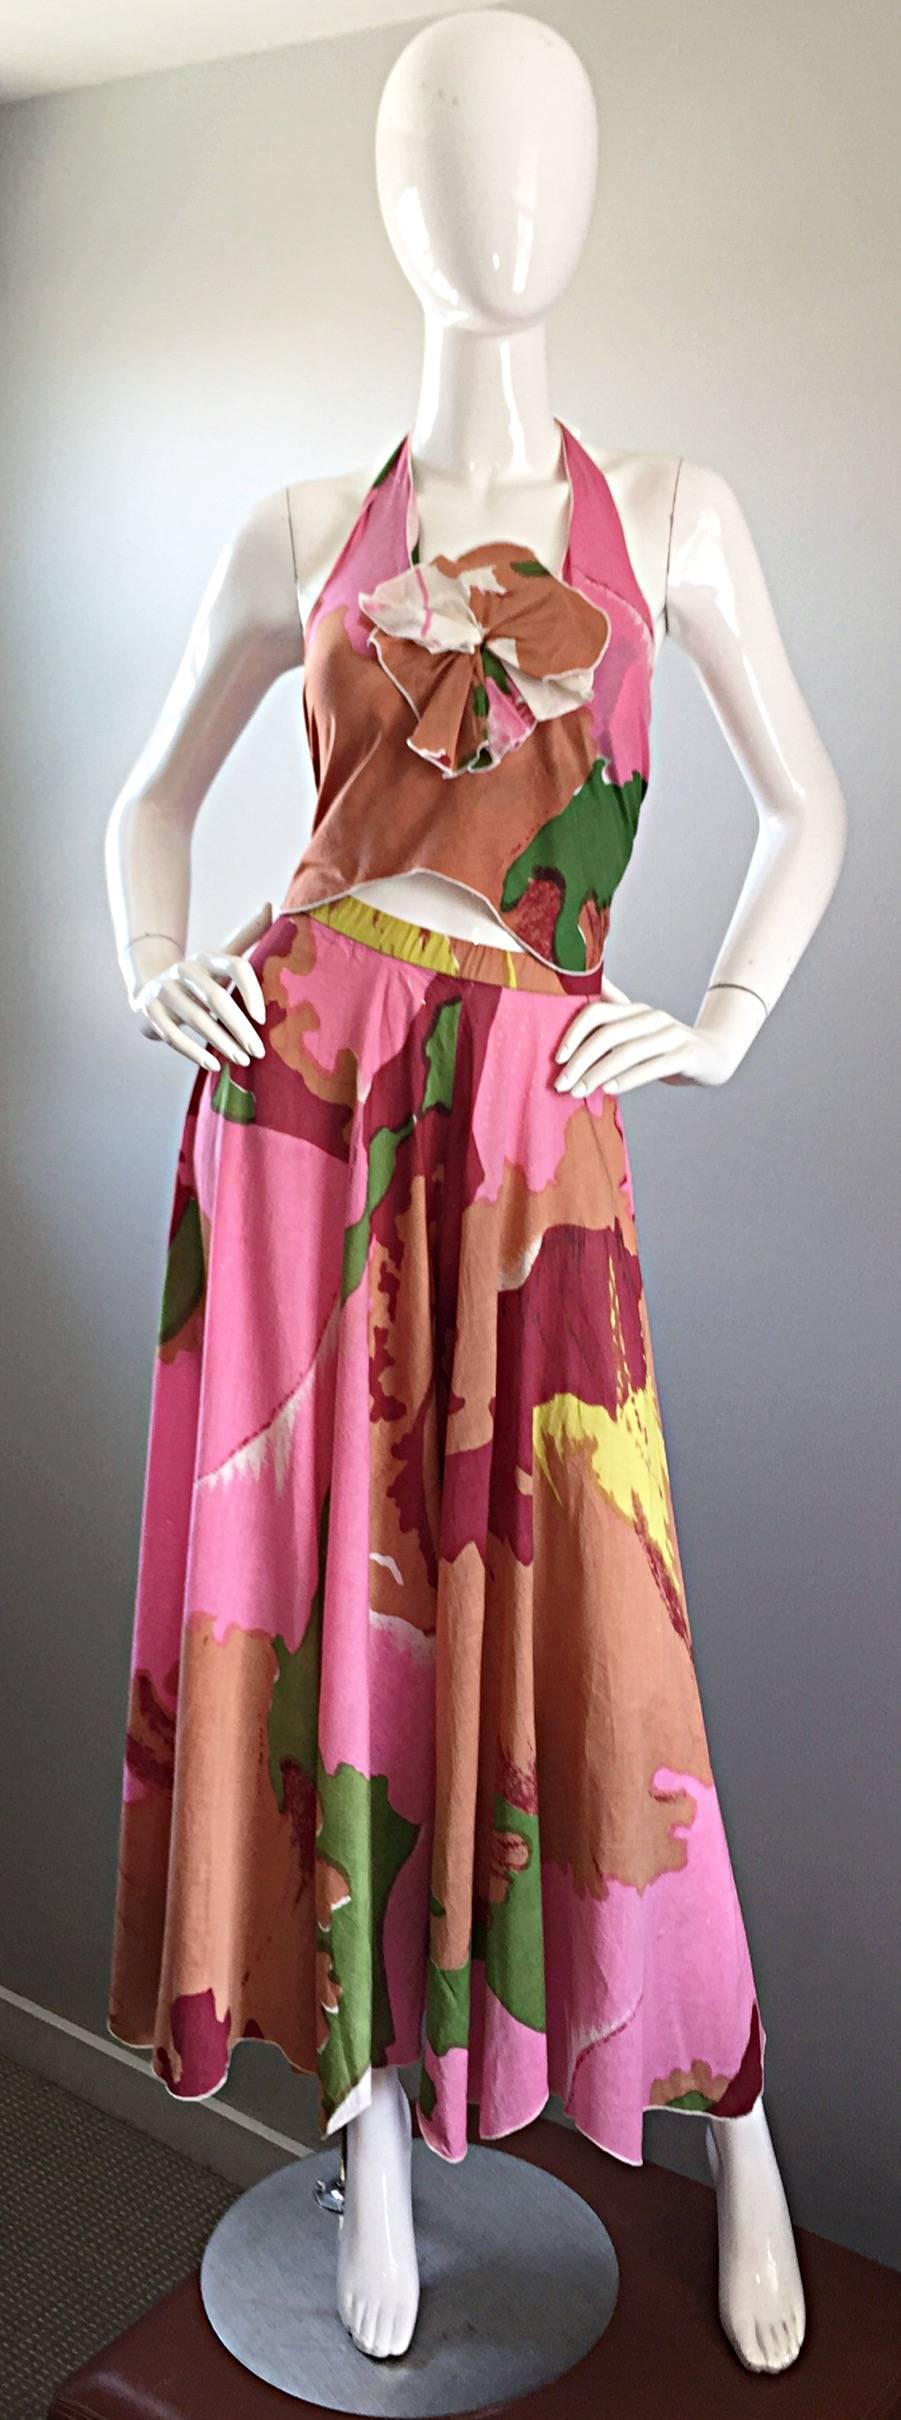 Brillante robe vintage des années 70, HOLLY'S HARP, avec un dos nu abstrait coloré et un pantalon palazzo à jambes larges ! Coton super doux avec un magnifique imprimé dans les tons roses, bruns, verts et blancs. Détail chic de fleurs en origami sur